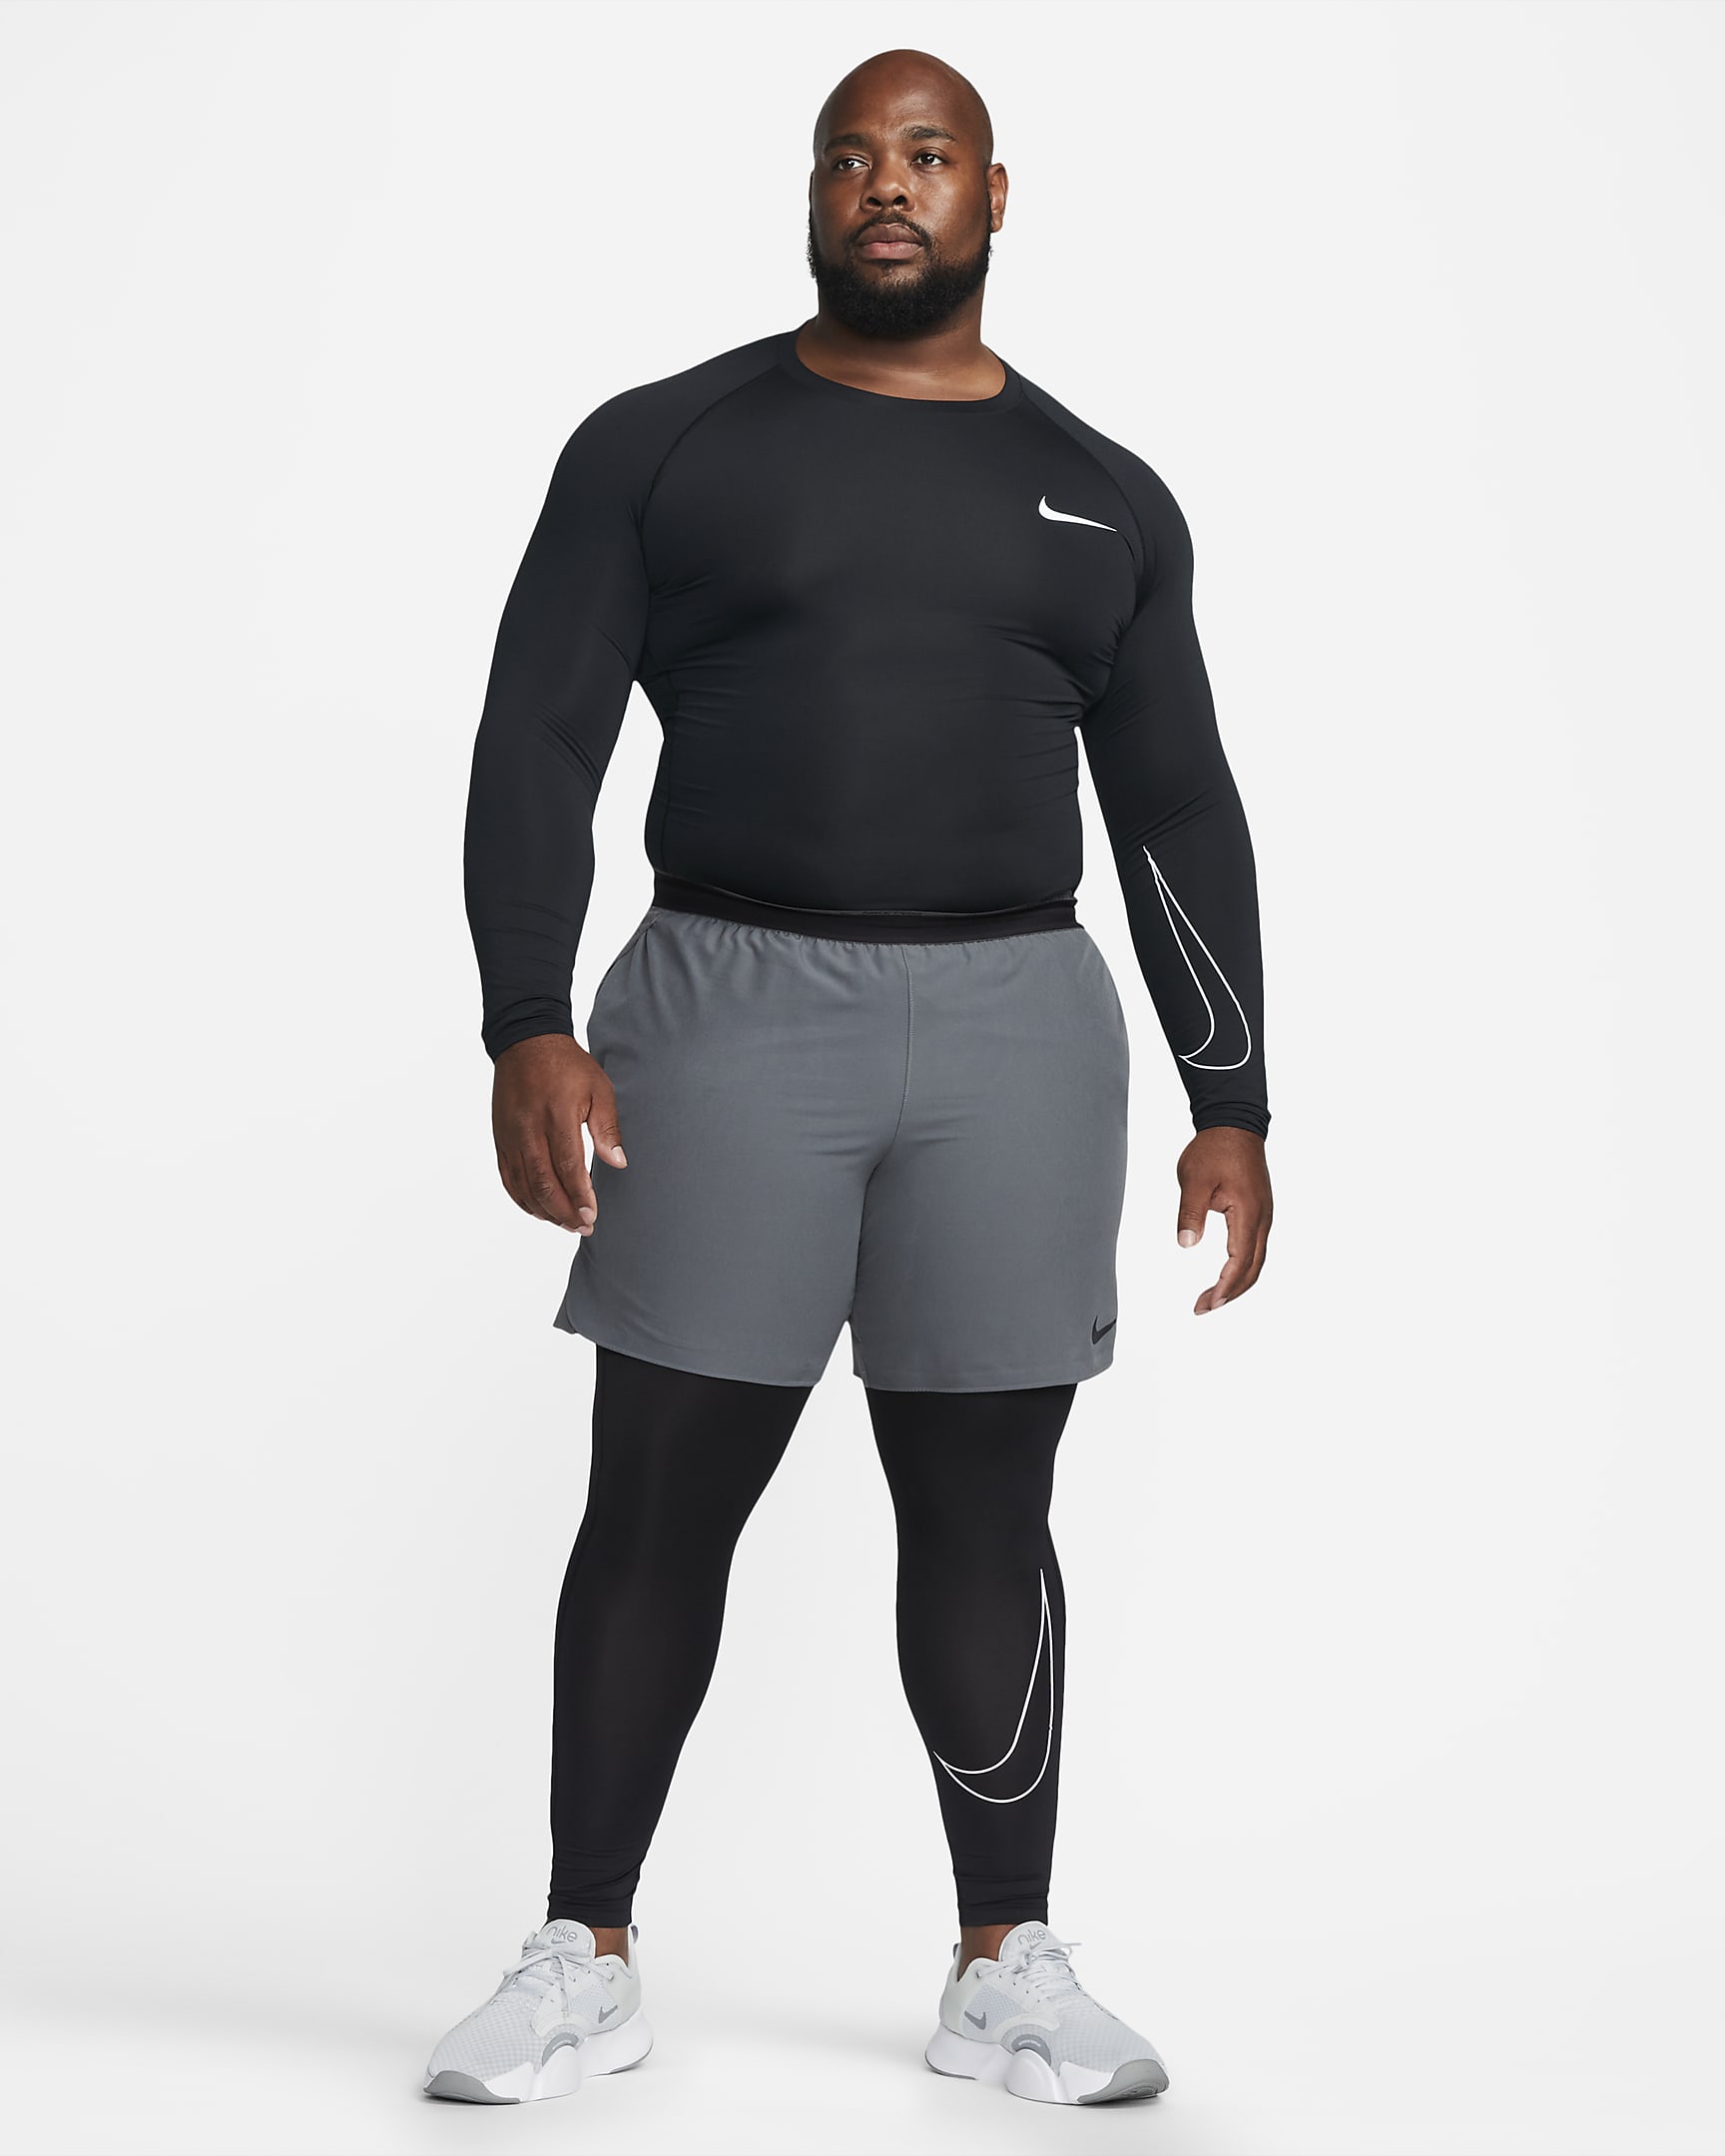 Nike Pro Dri-FIT Men's Tight-Fit Long-Sleeve Top. Nike BG